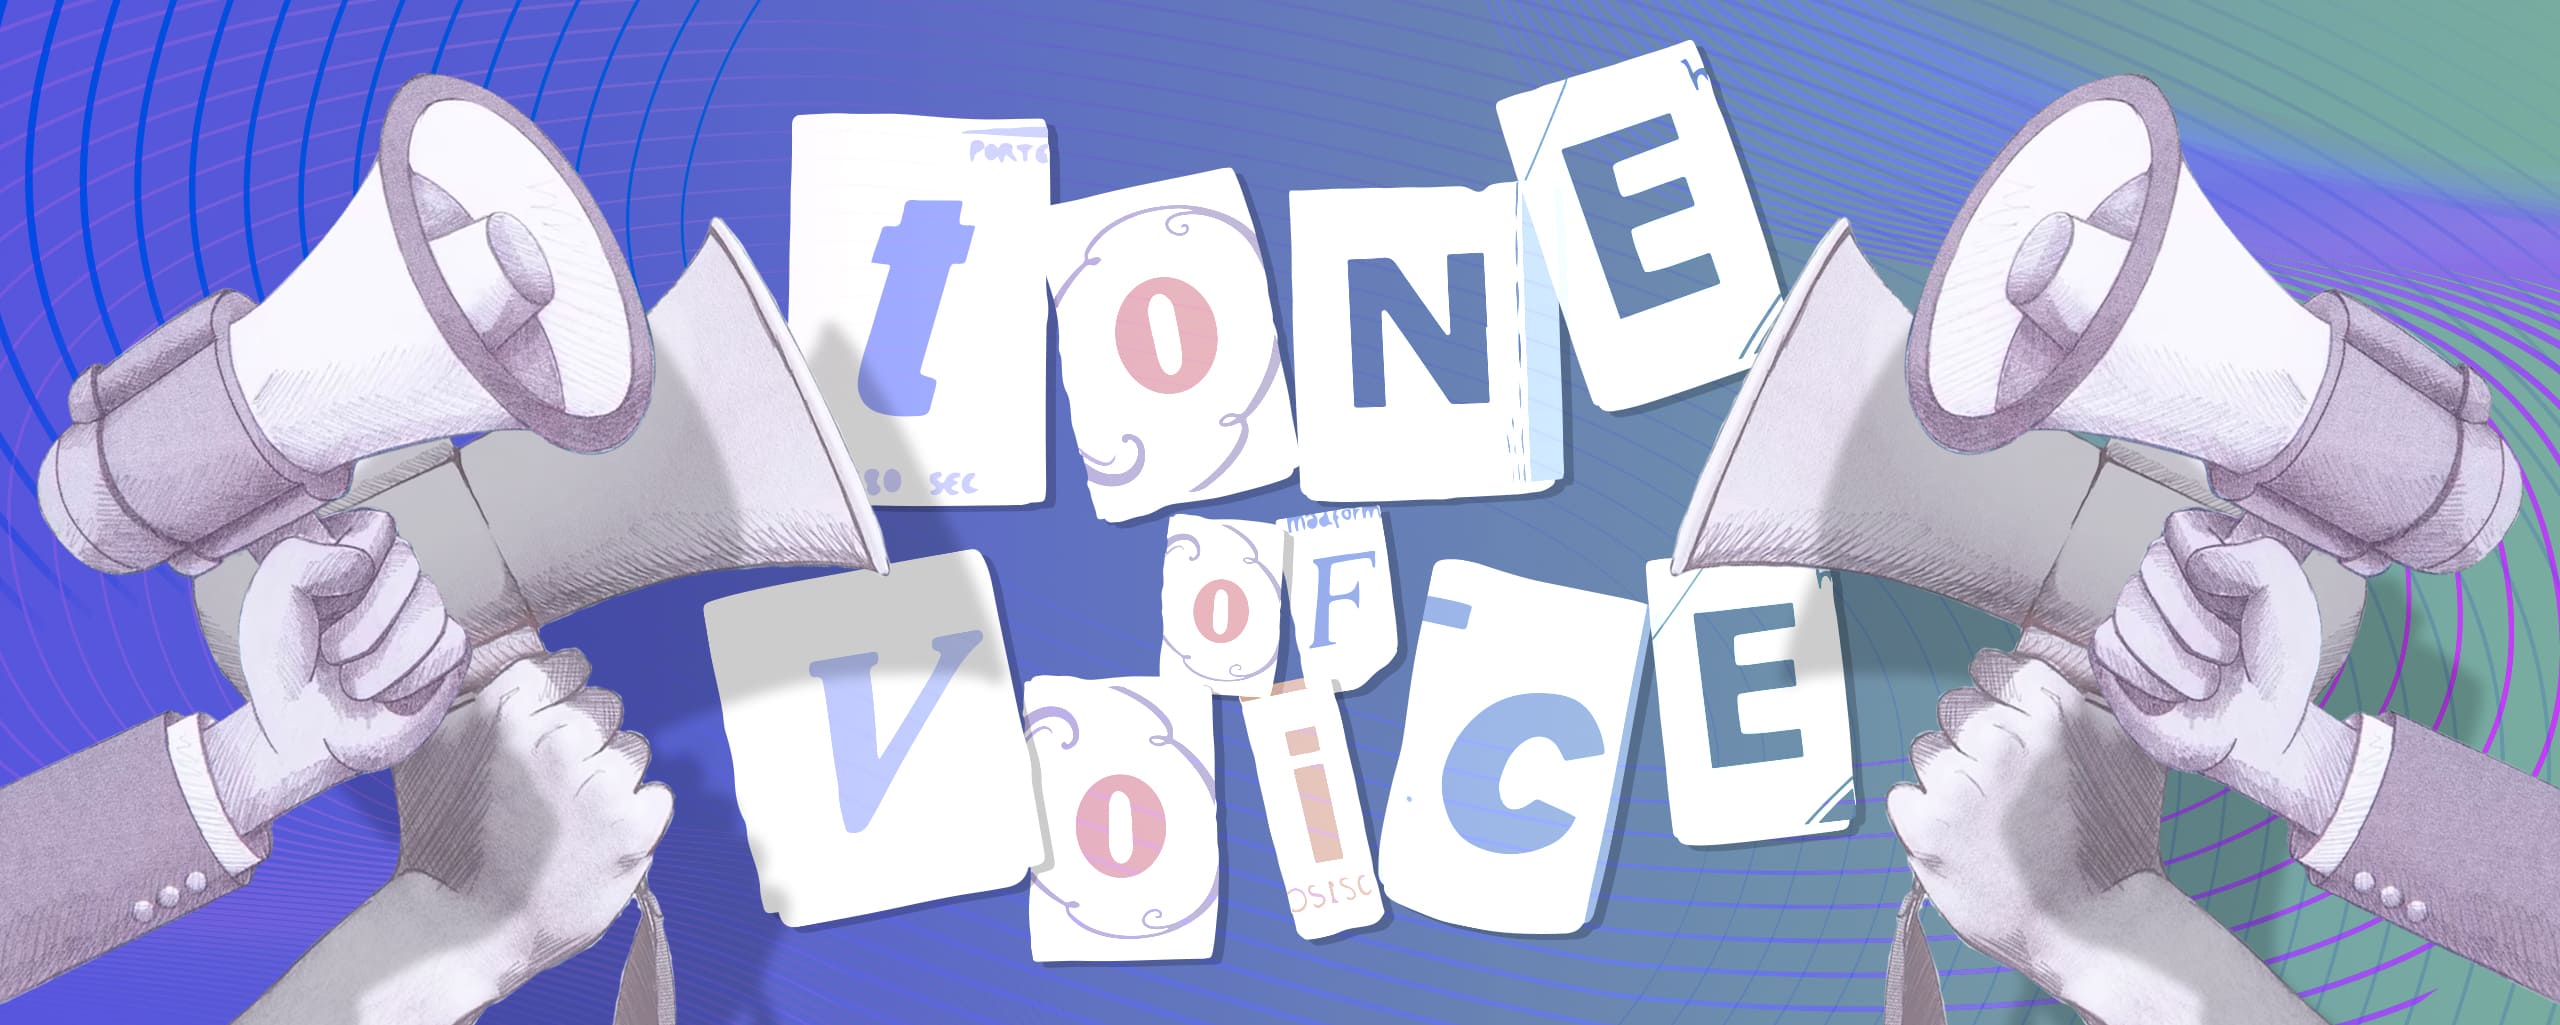 Tone of Voice Mengoptimalkan Brand